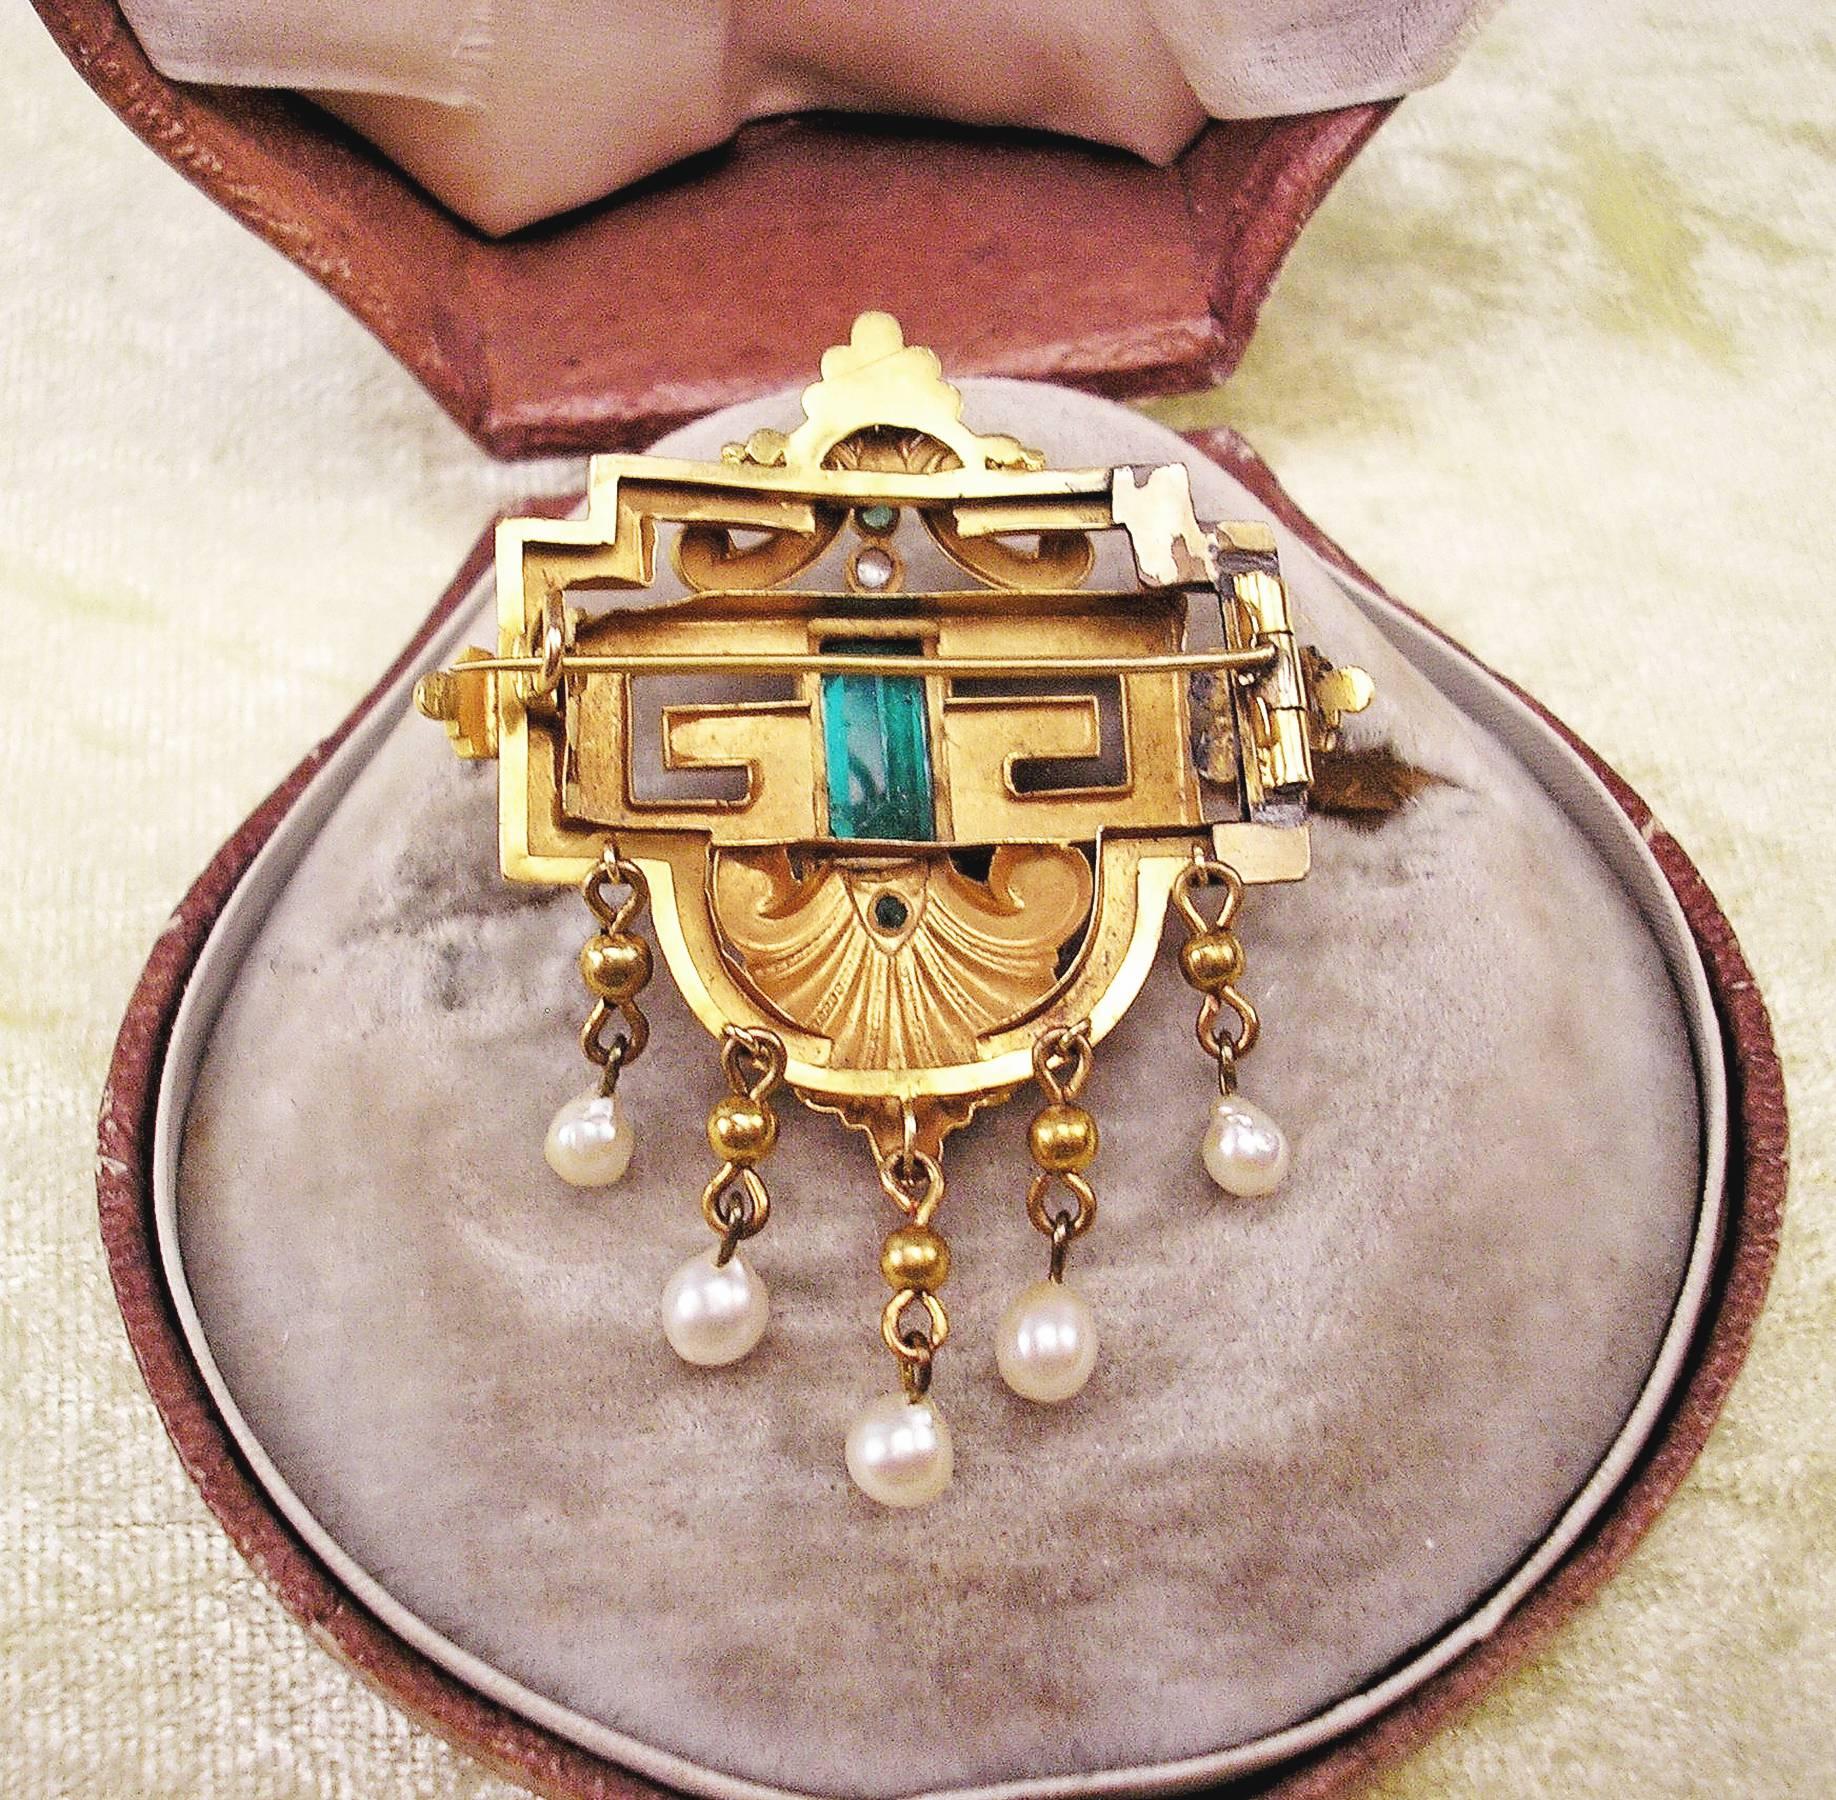 Women's Biedermeier Brooch Gold Emeralds Tourmaline Pearls Original Case made c.1850